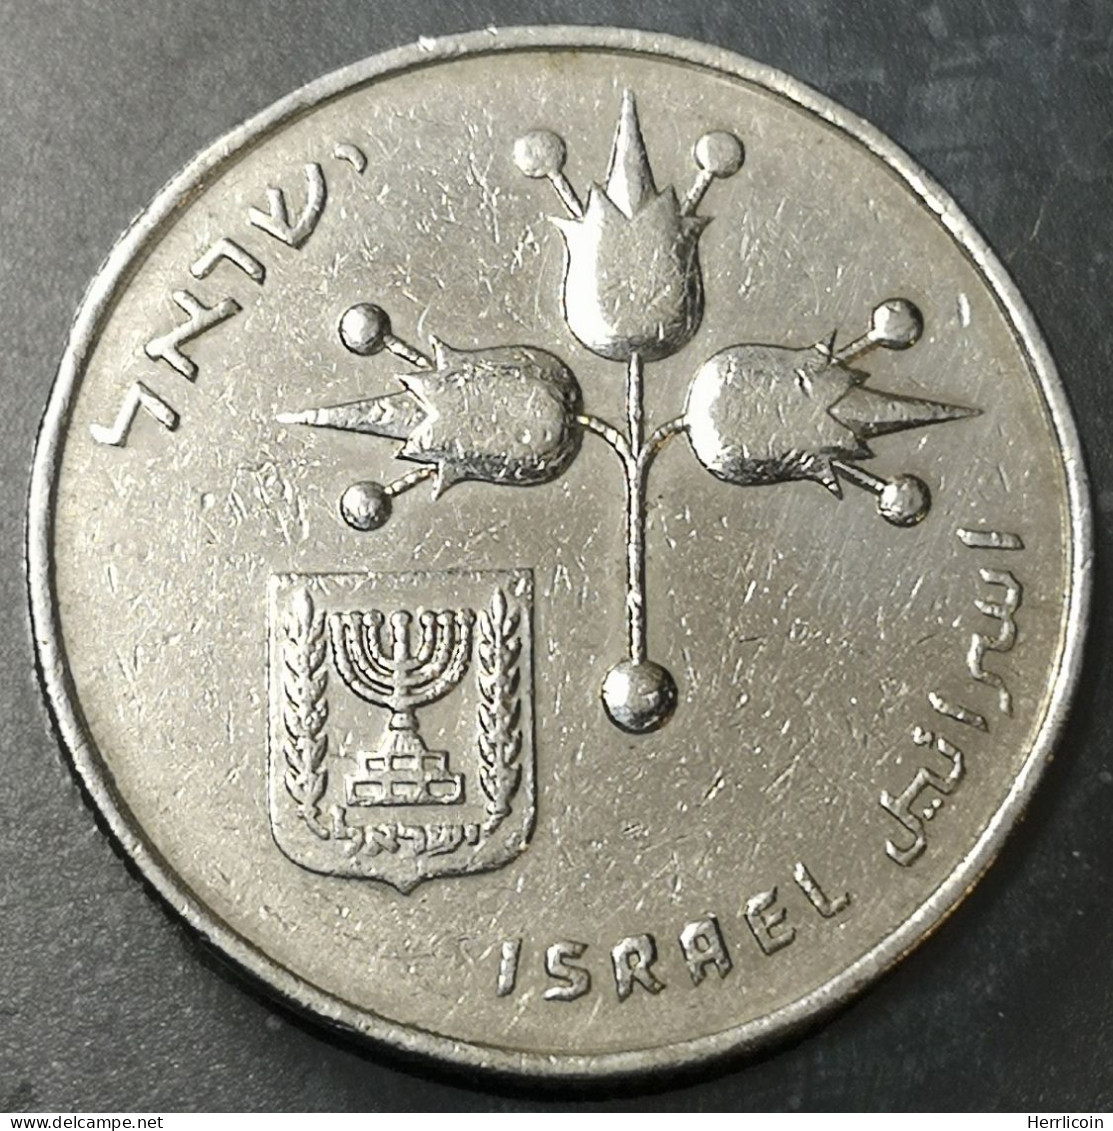 Monnaie Israel - 5733 (1973)  תשל"ג- 1 Lira - Israel